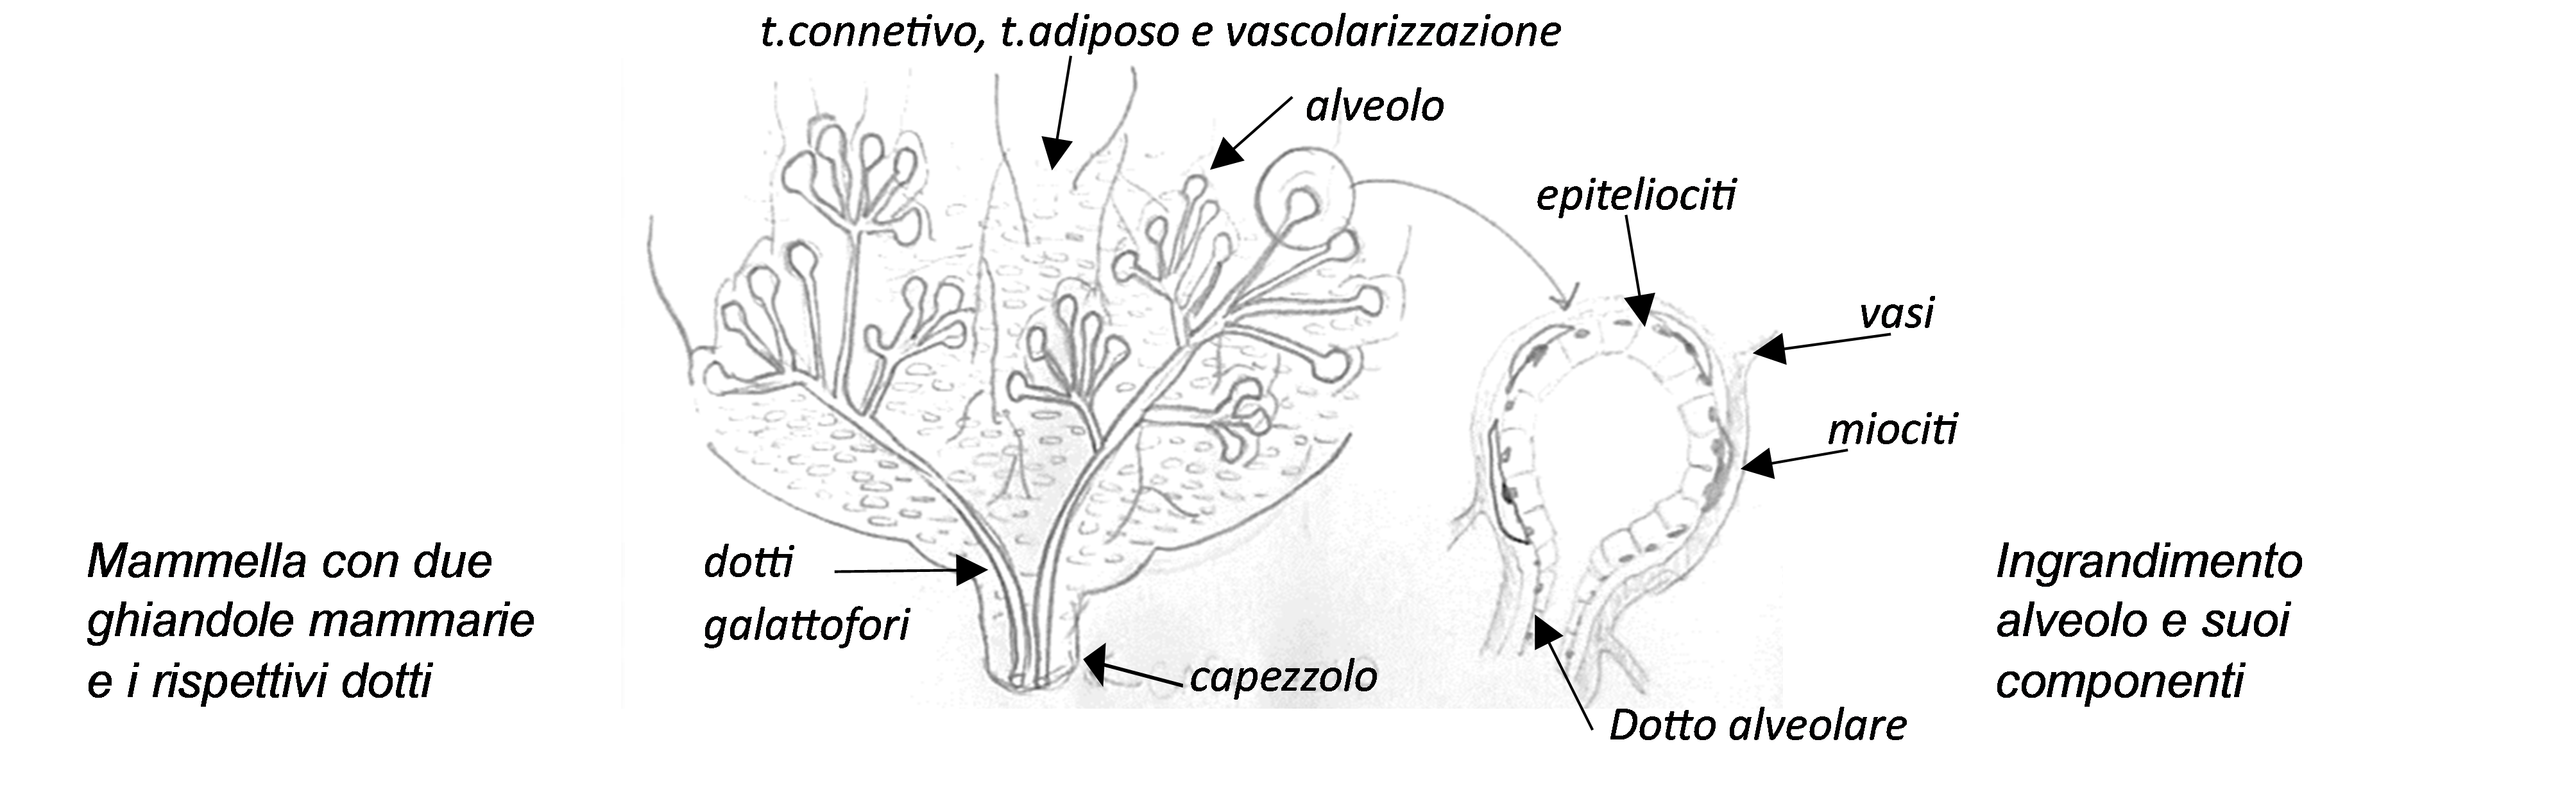 Figura 1: Mammella con due ghiandole mammarie e i rispettivi dotti